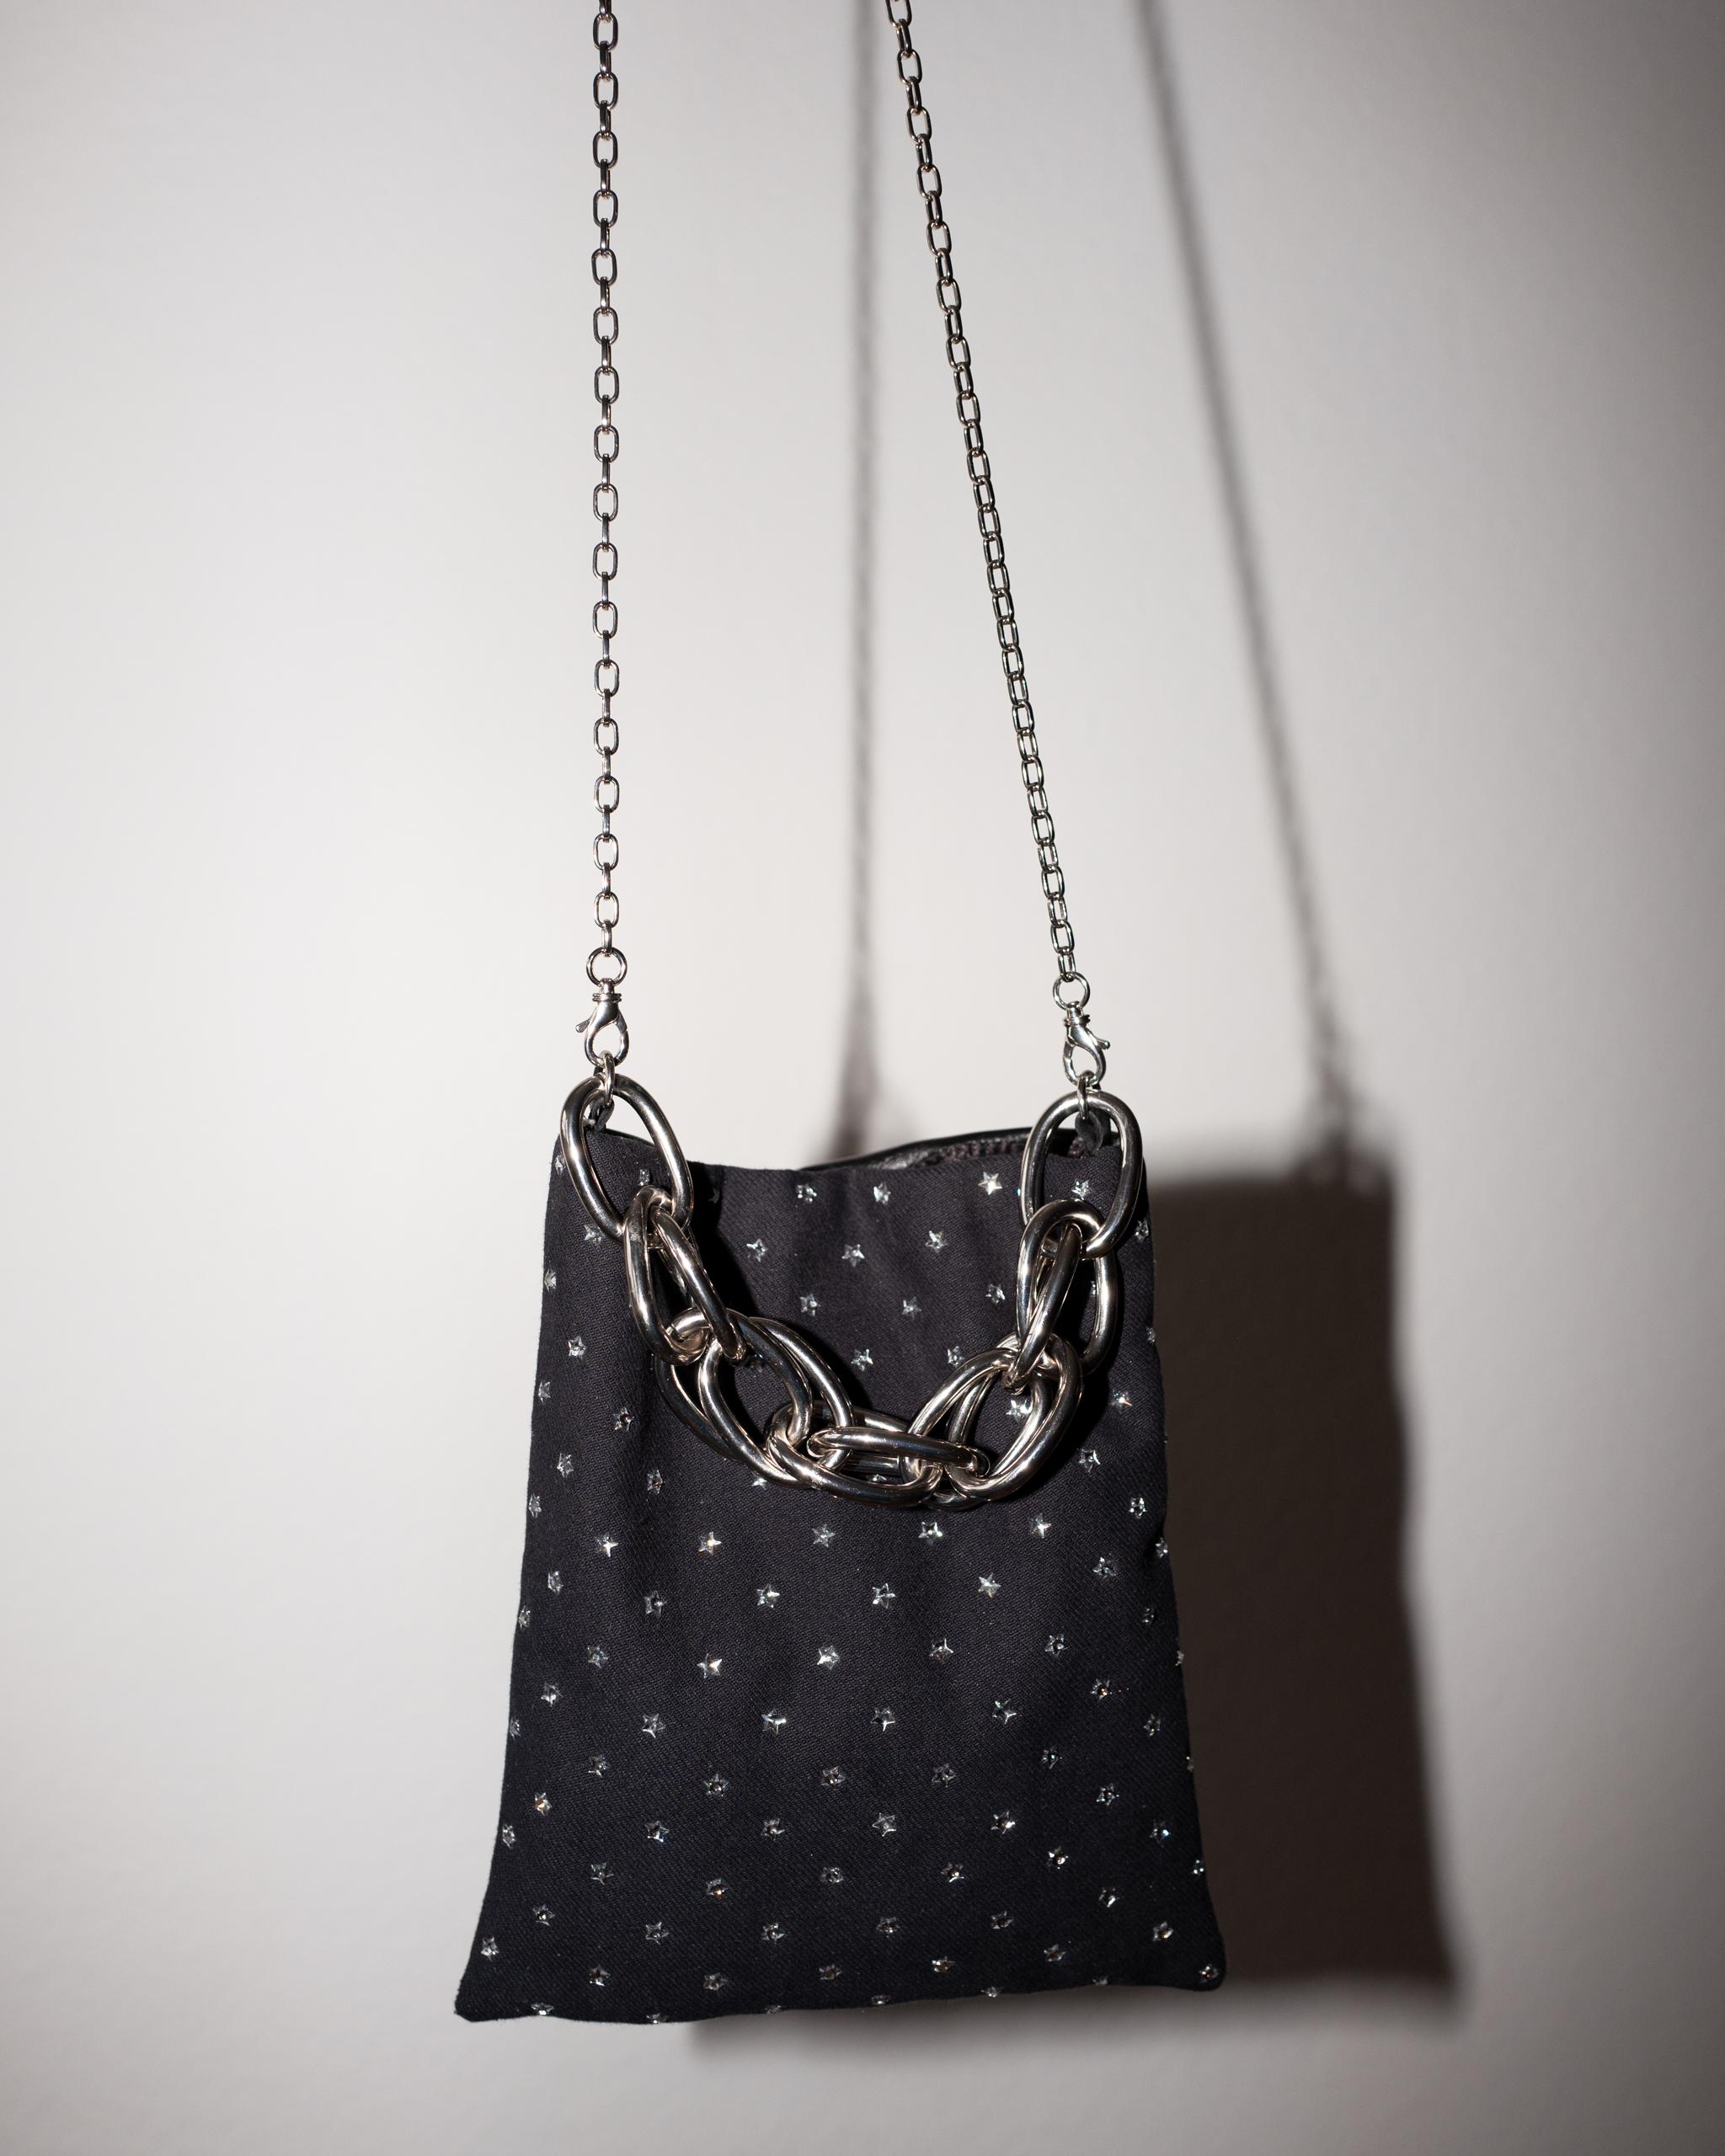 Women's Crystal Star Embellished Black Evening Shoulder Bag Black Leather Chunky Chain